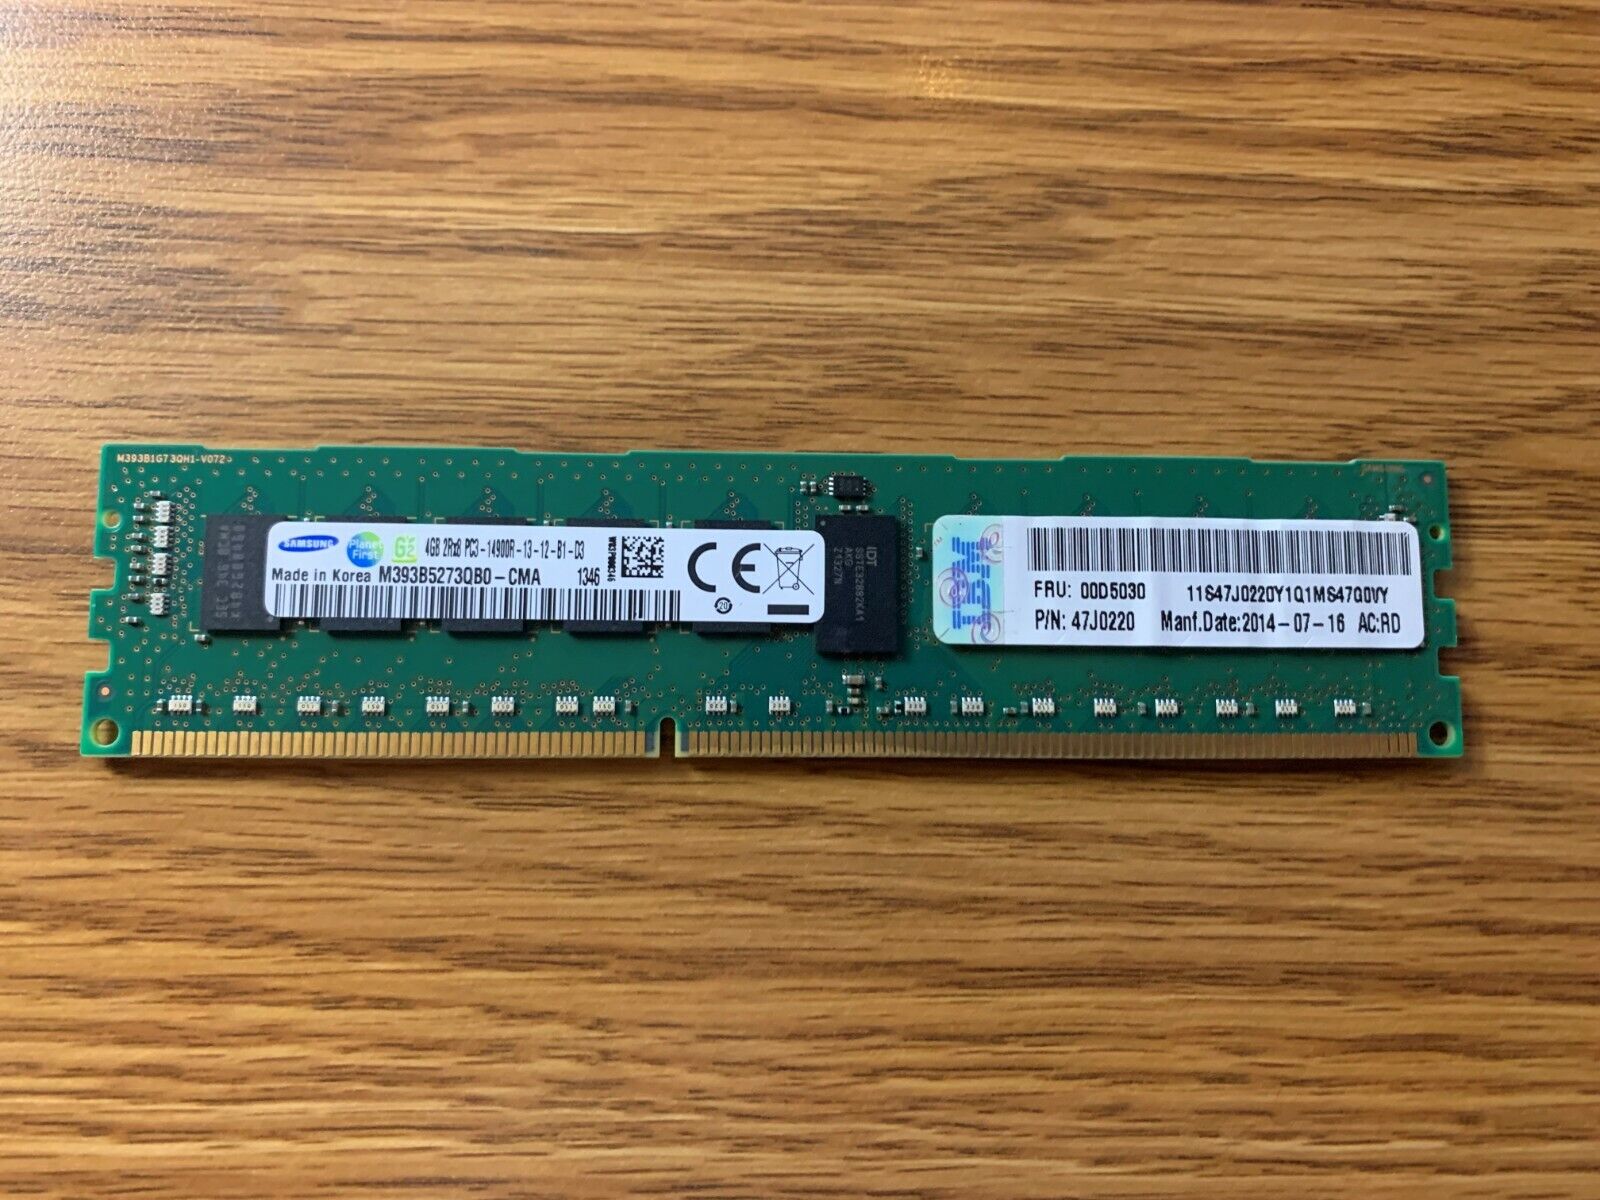 8GB Kit 47J0220 IBM (2x4GB) PC3-14900 DDR3-1866MHz ECC Registered 240-Pin DIMM